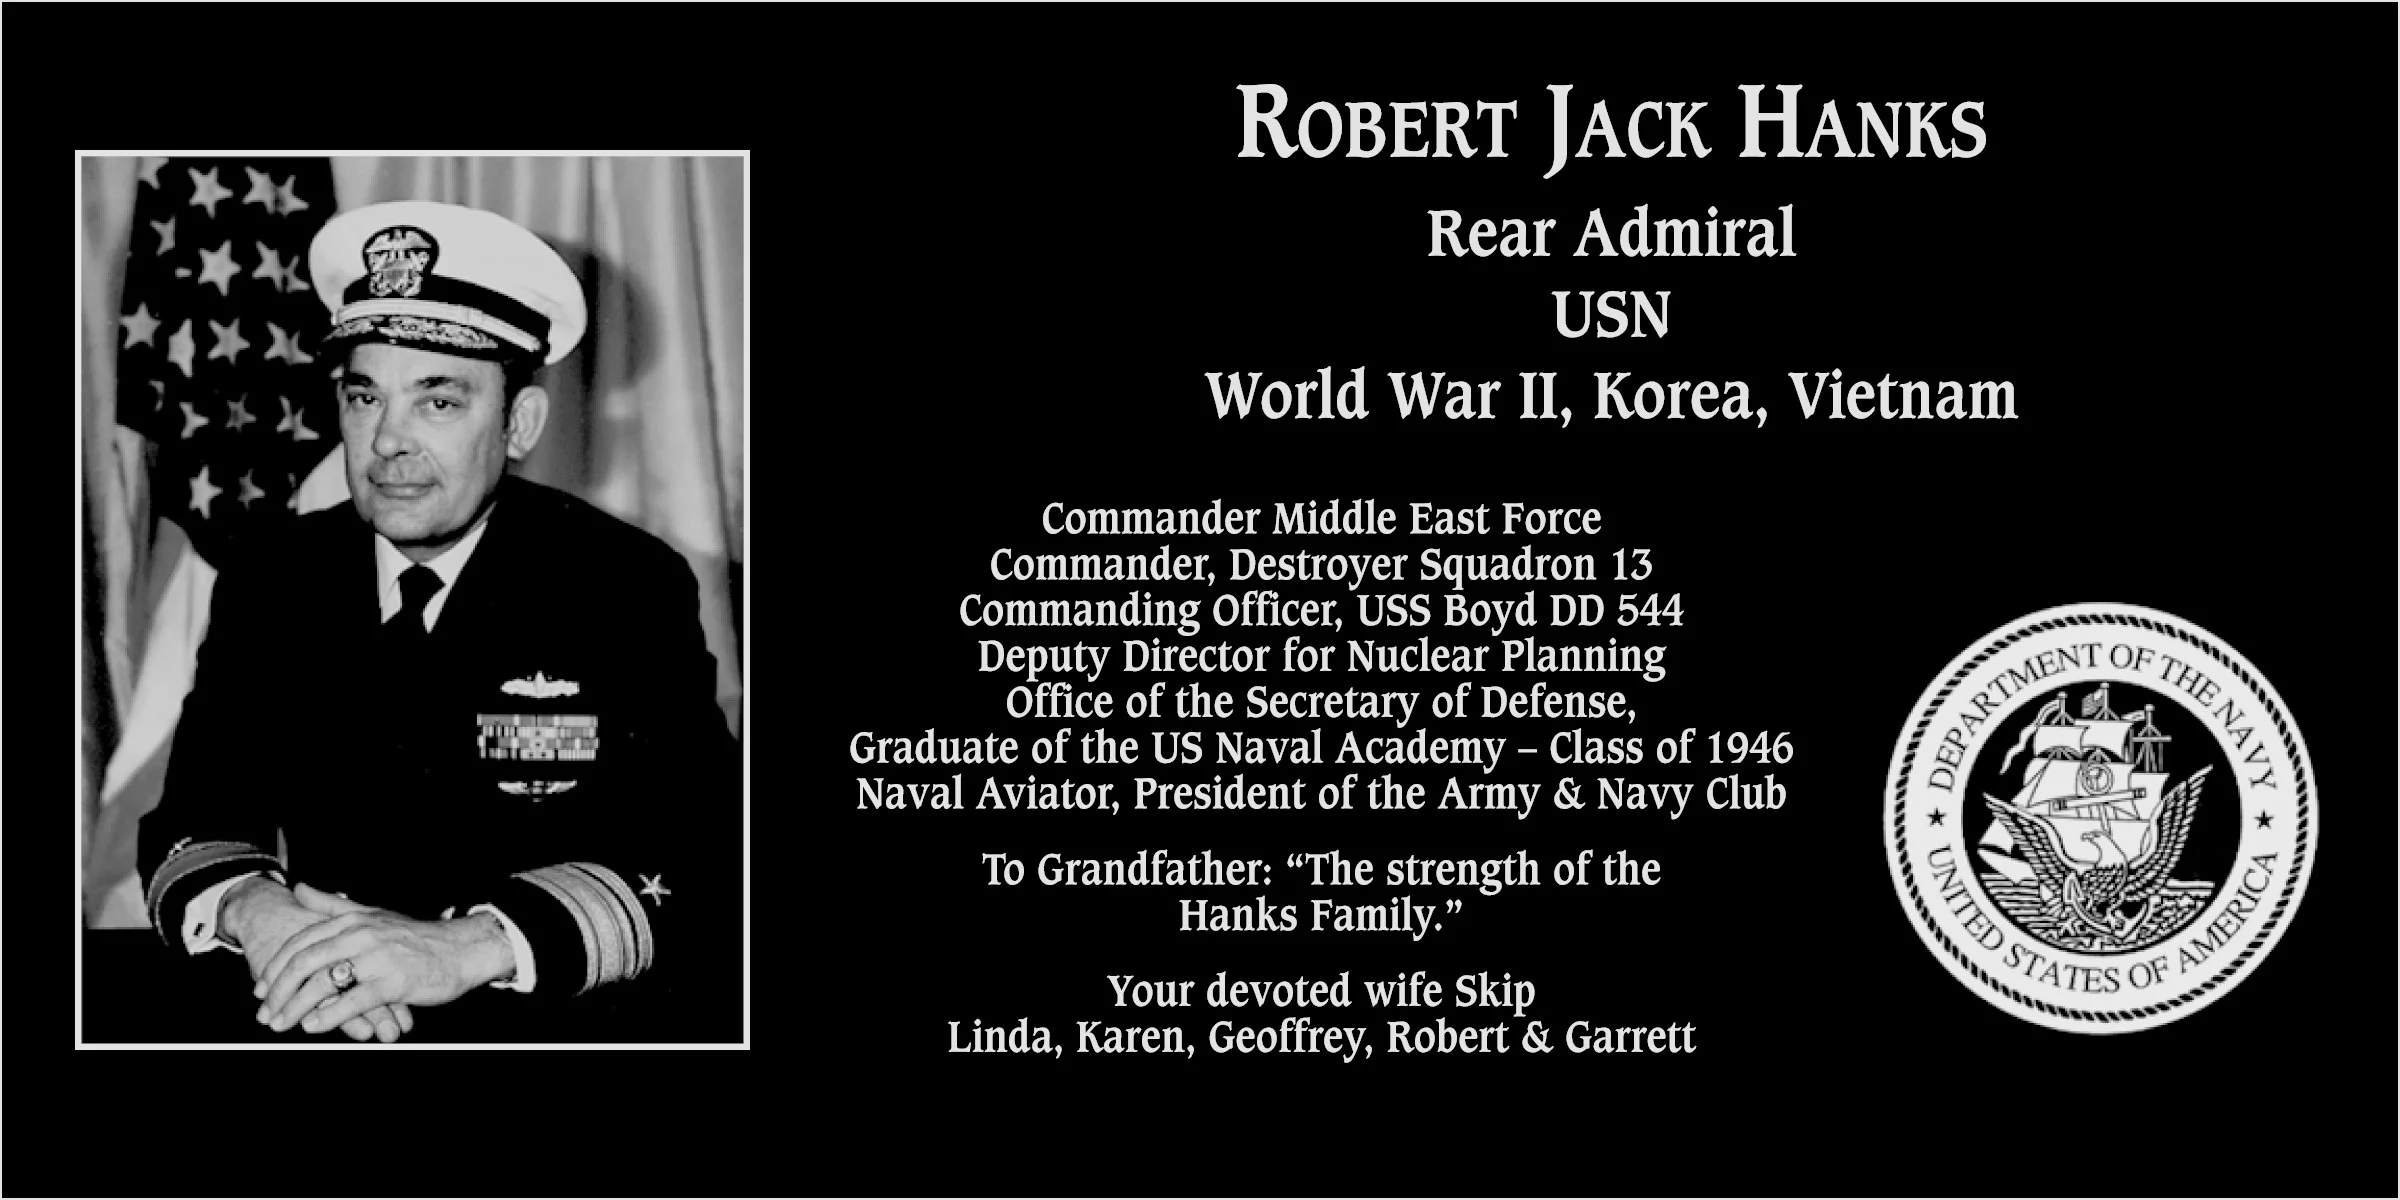 Robert Jack Hanks